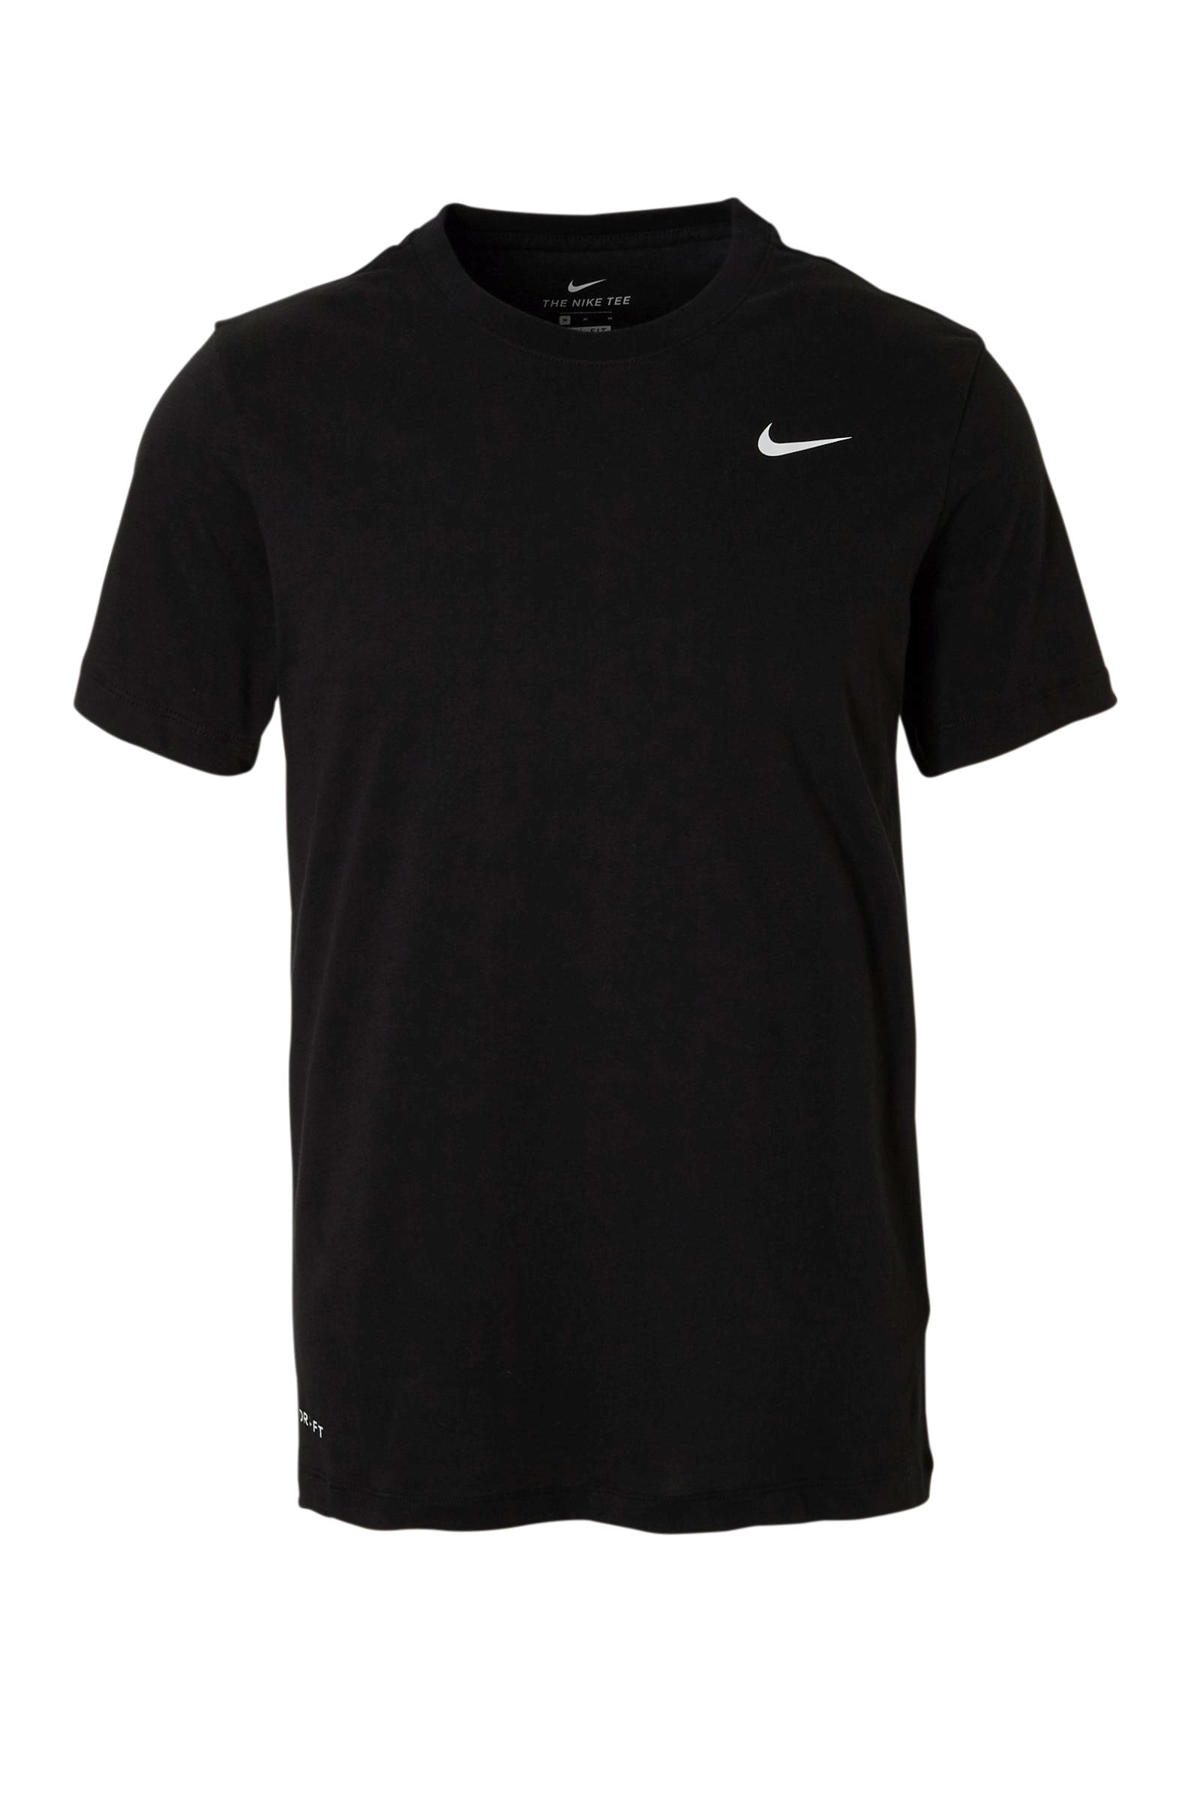 Convergeren Uitrusten vlot Nike sport T-shirt zwart kopen? | Morgen in huis | wehkamp